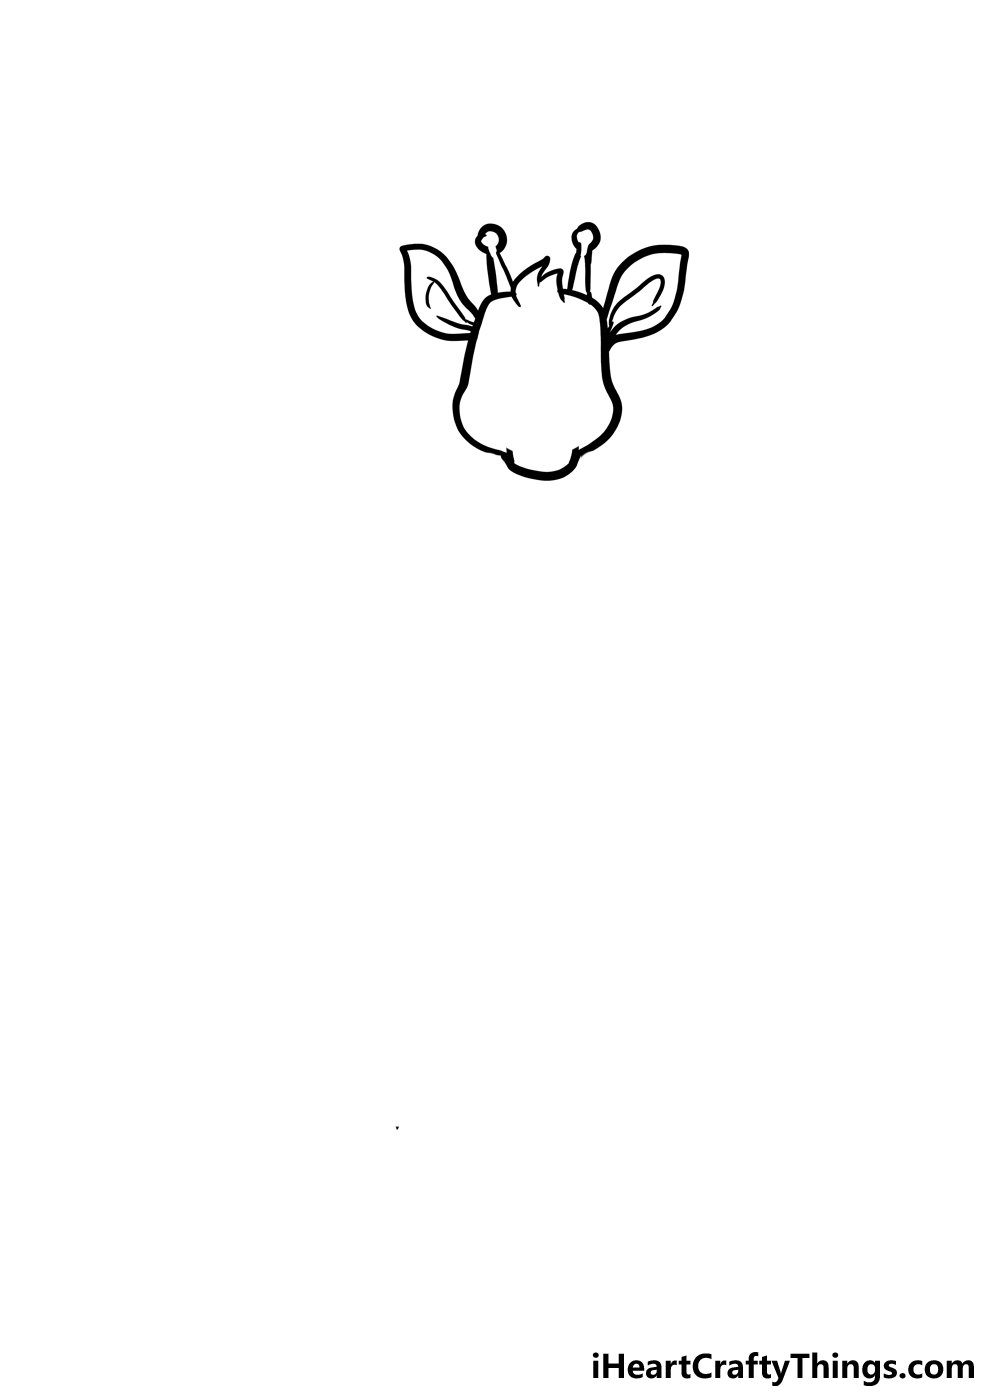 How to Draw A Cute Giraffe step 2